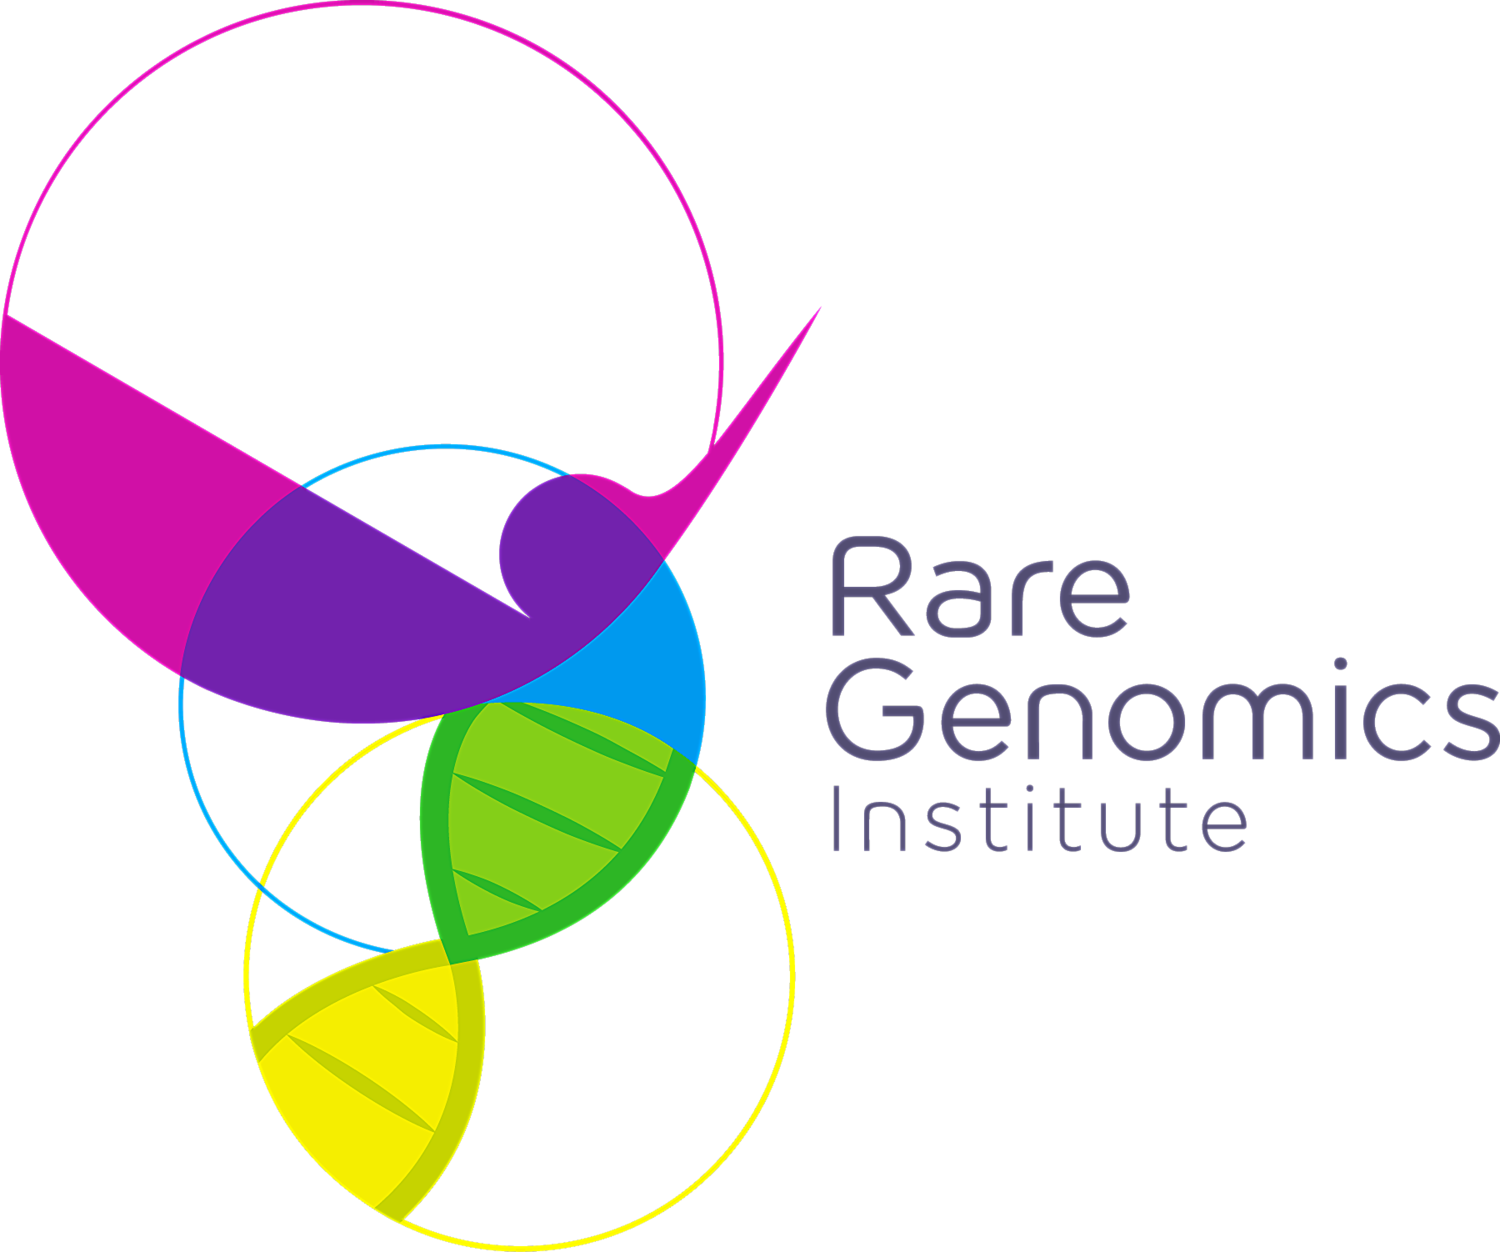 Rare Genomics Institute colorful DNA Strand Icon logo deisgn 